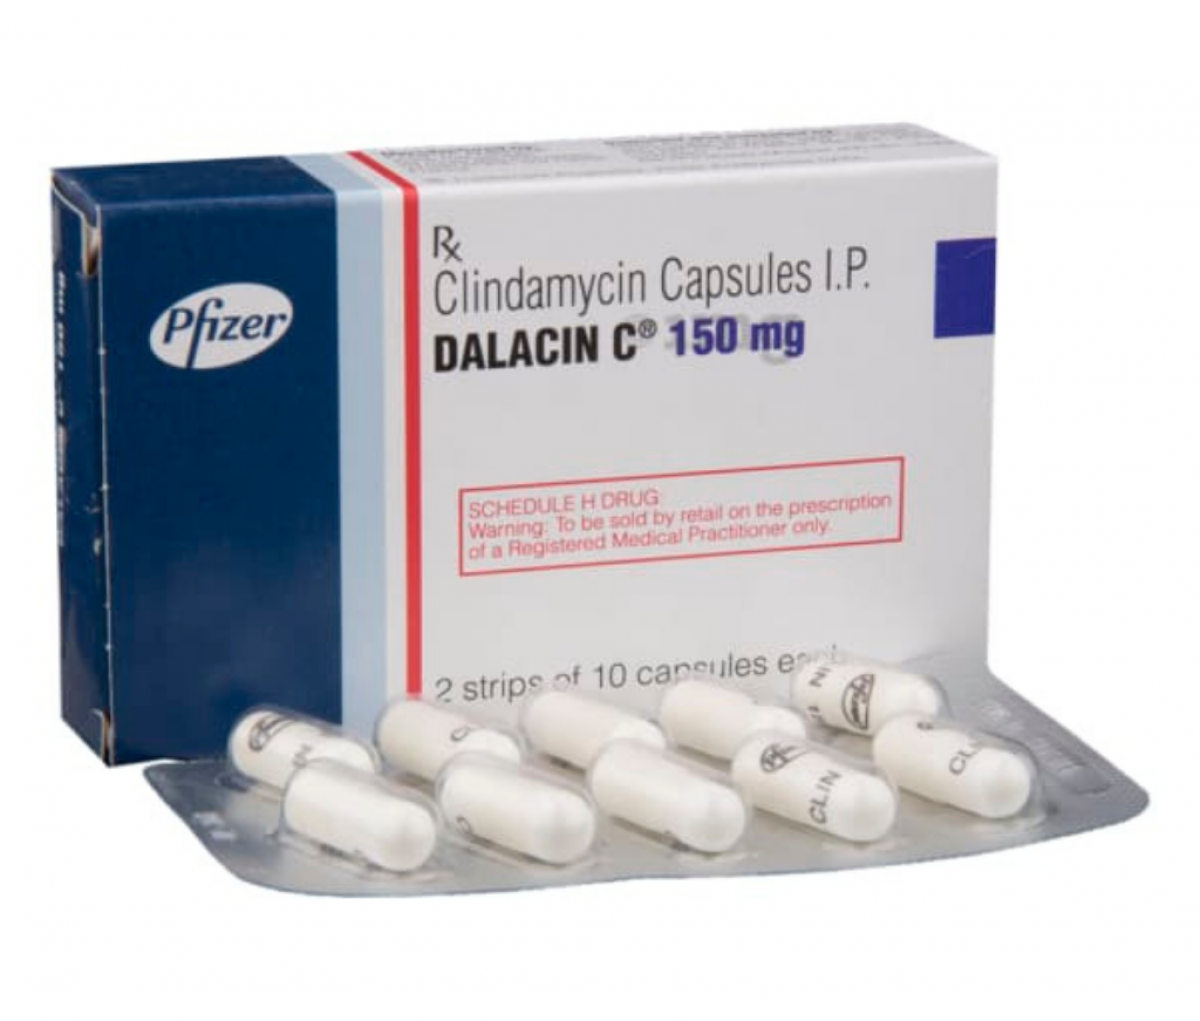 Dalacin C 150mg Capsule